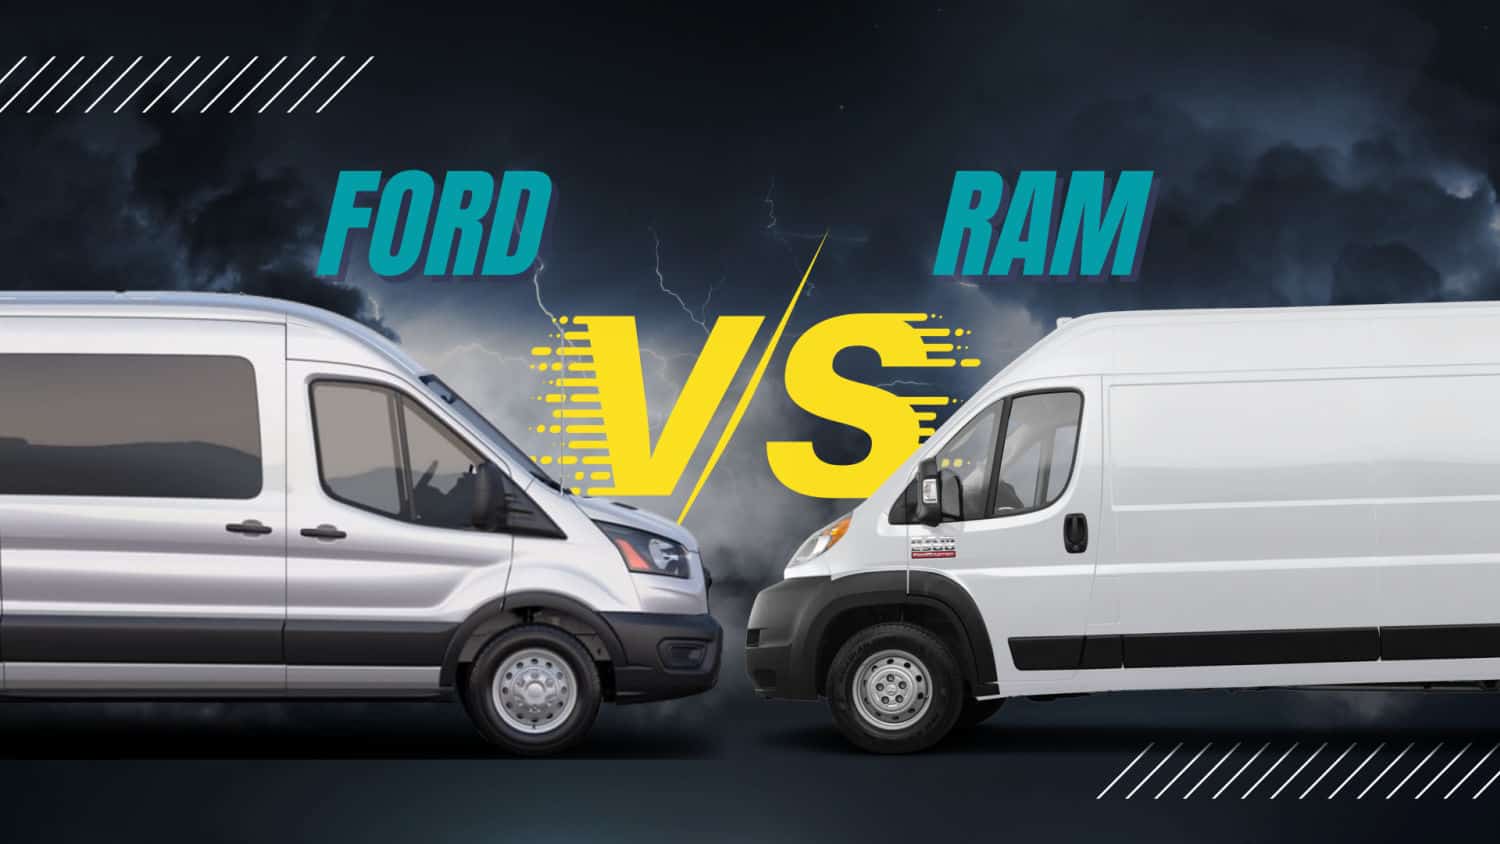 Ford vs Ram Camper Van